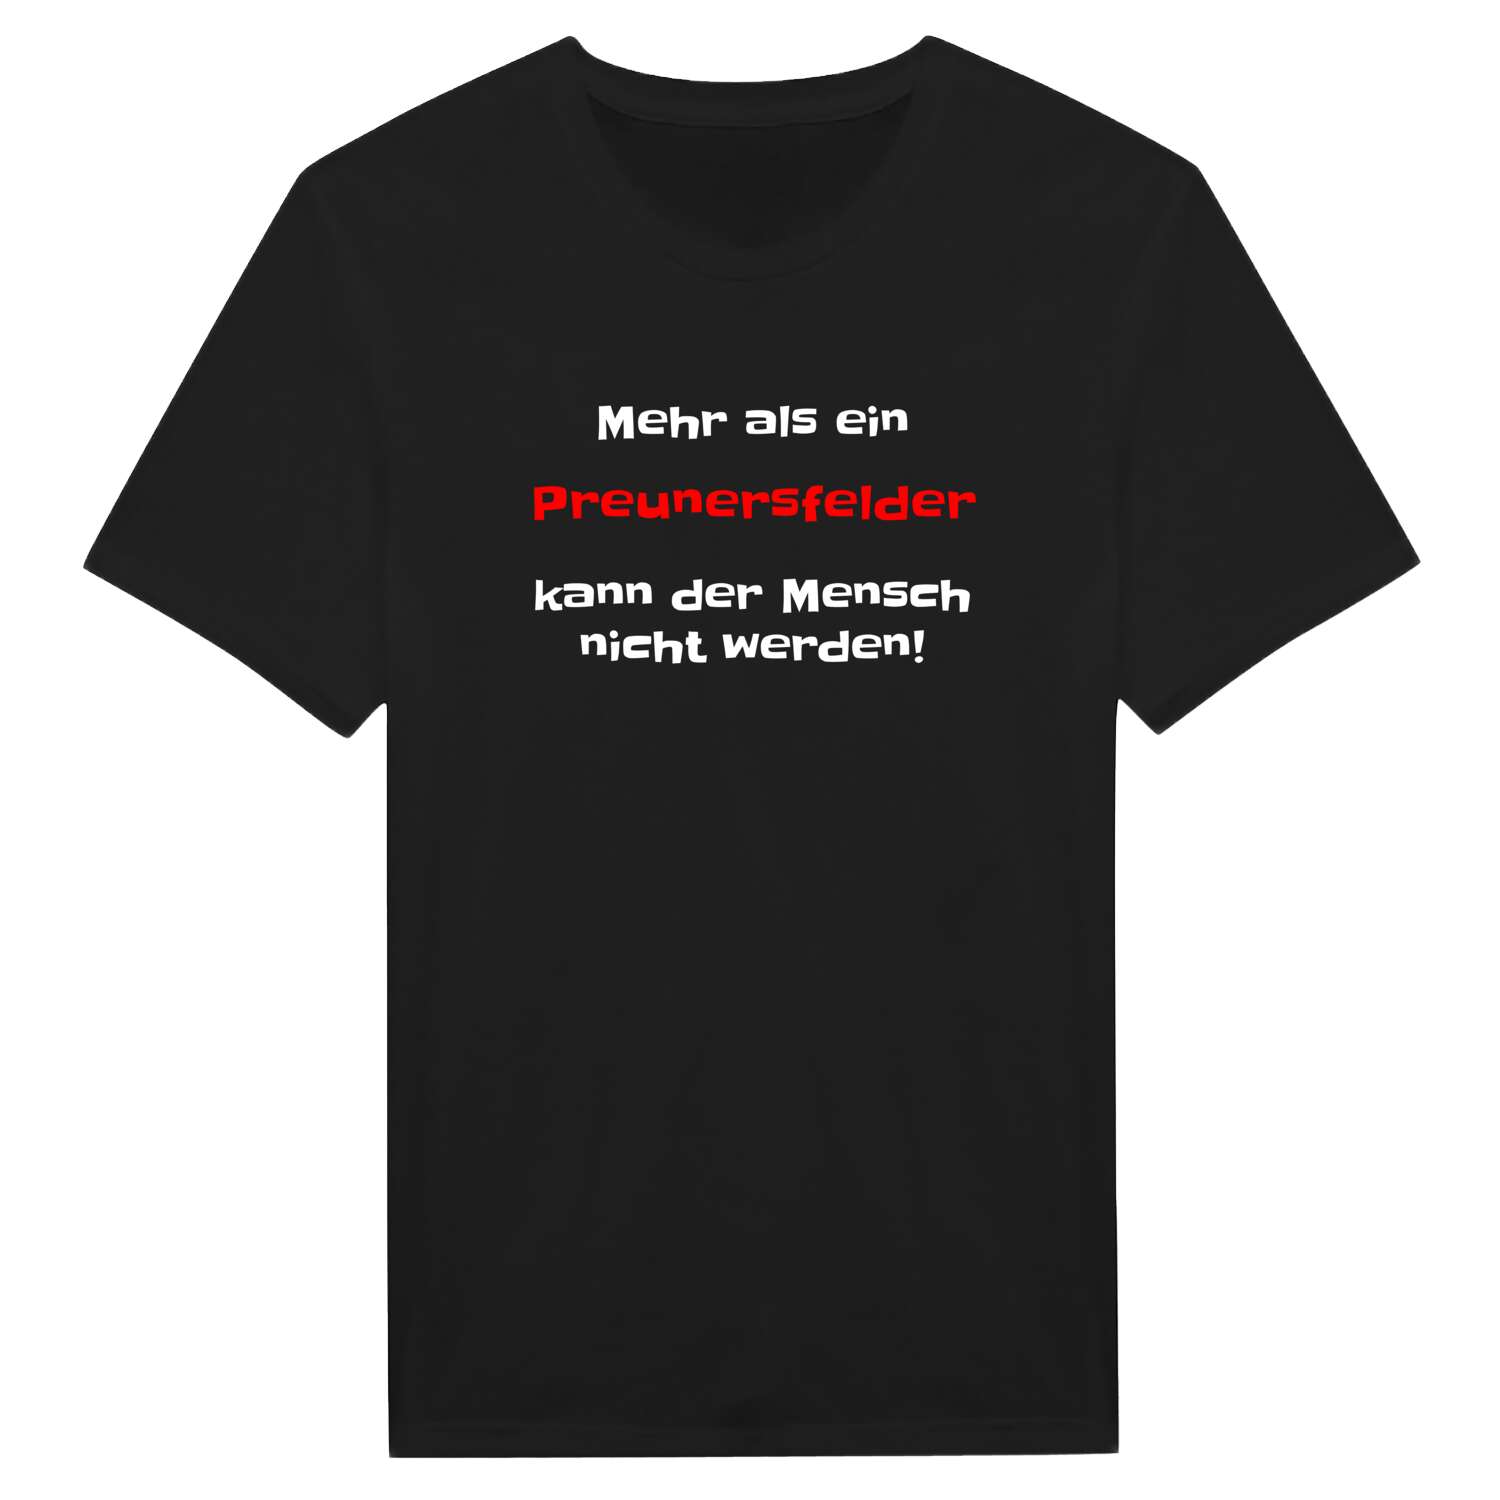 Preunersfeld T-Shirt »Mehr als ein«